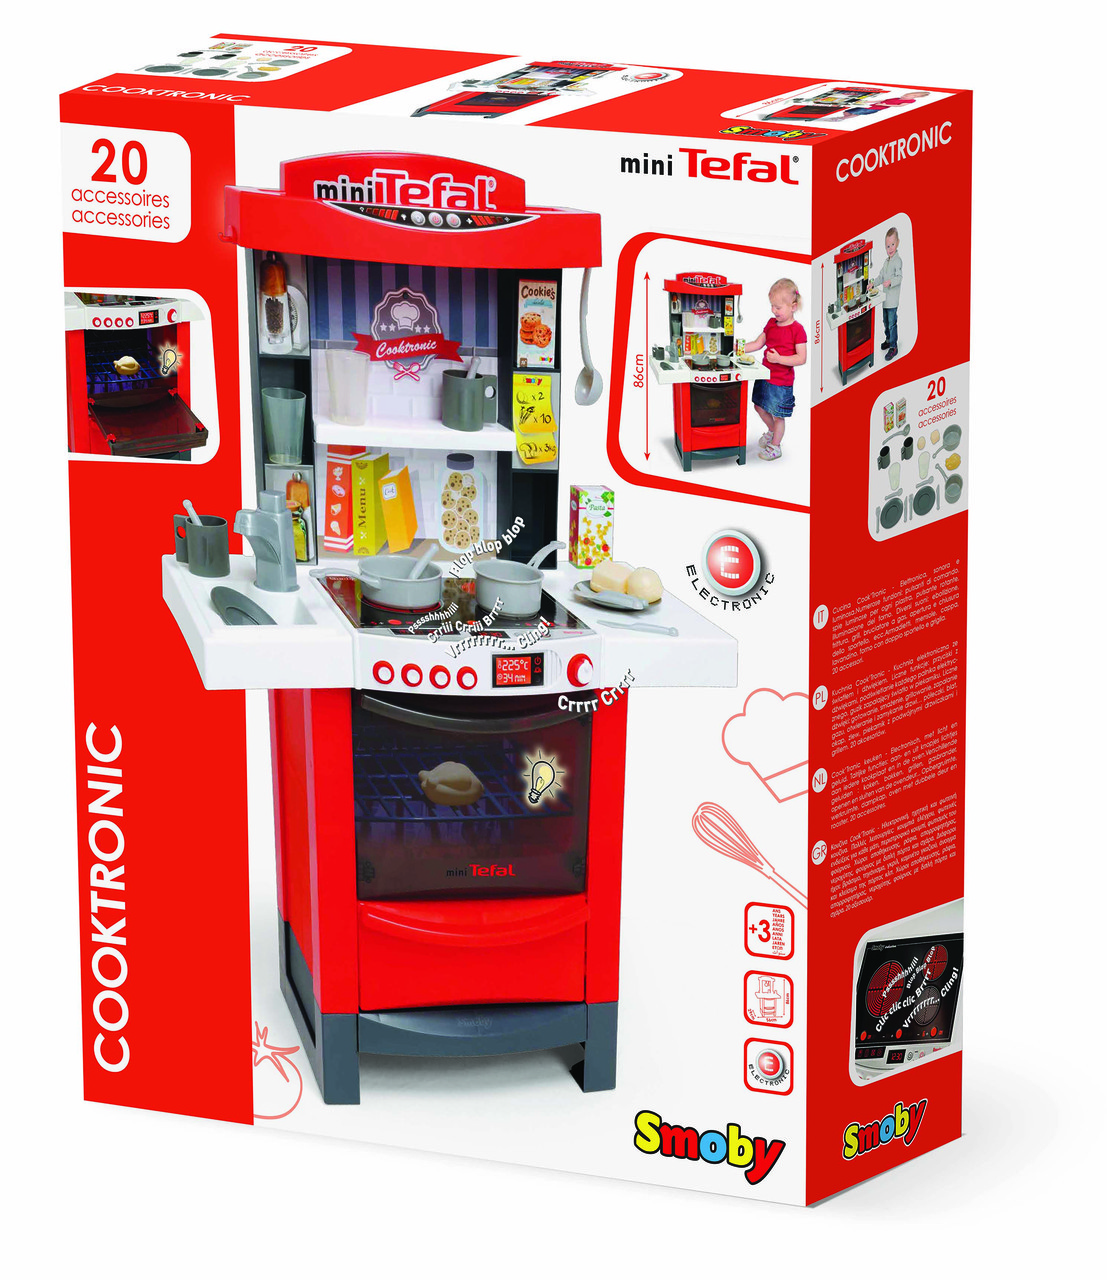 Детская игровая кухня электронная кухня Smoby Tefal Cooktronic 311501